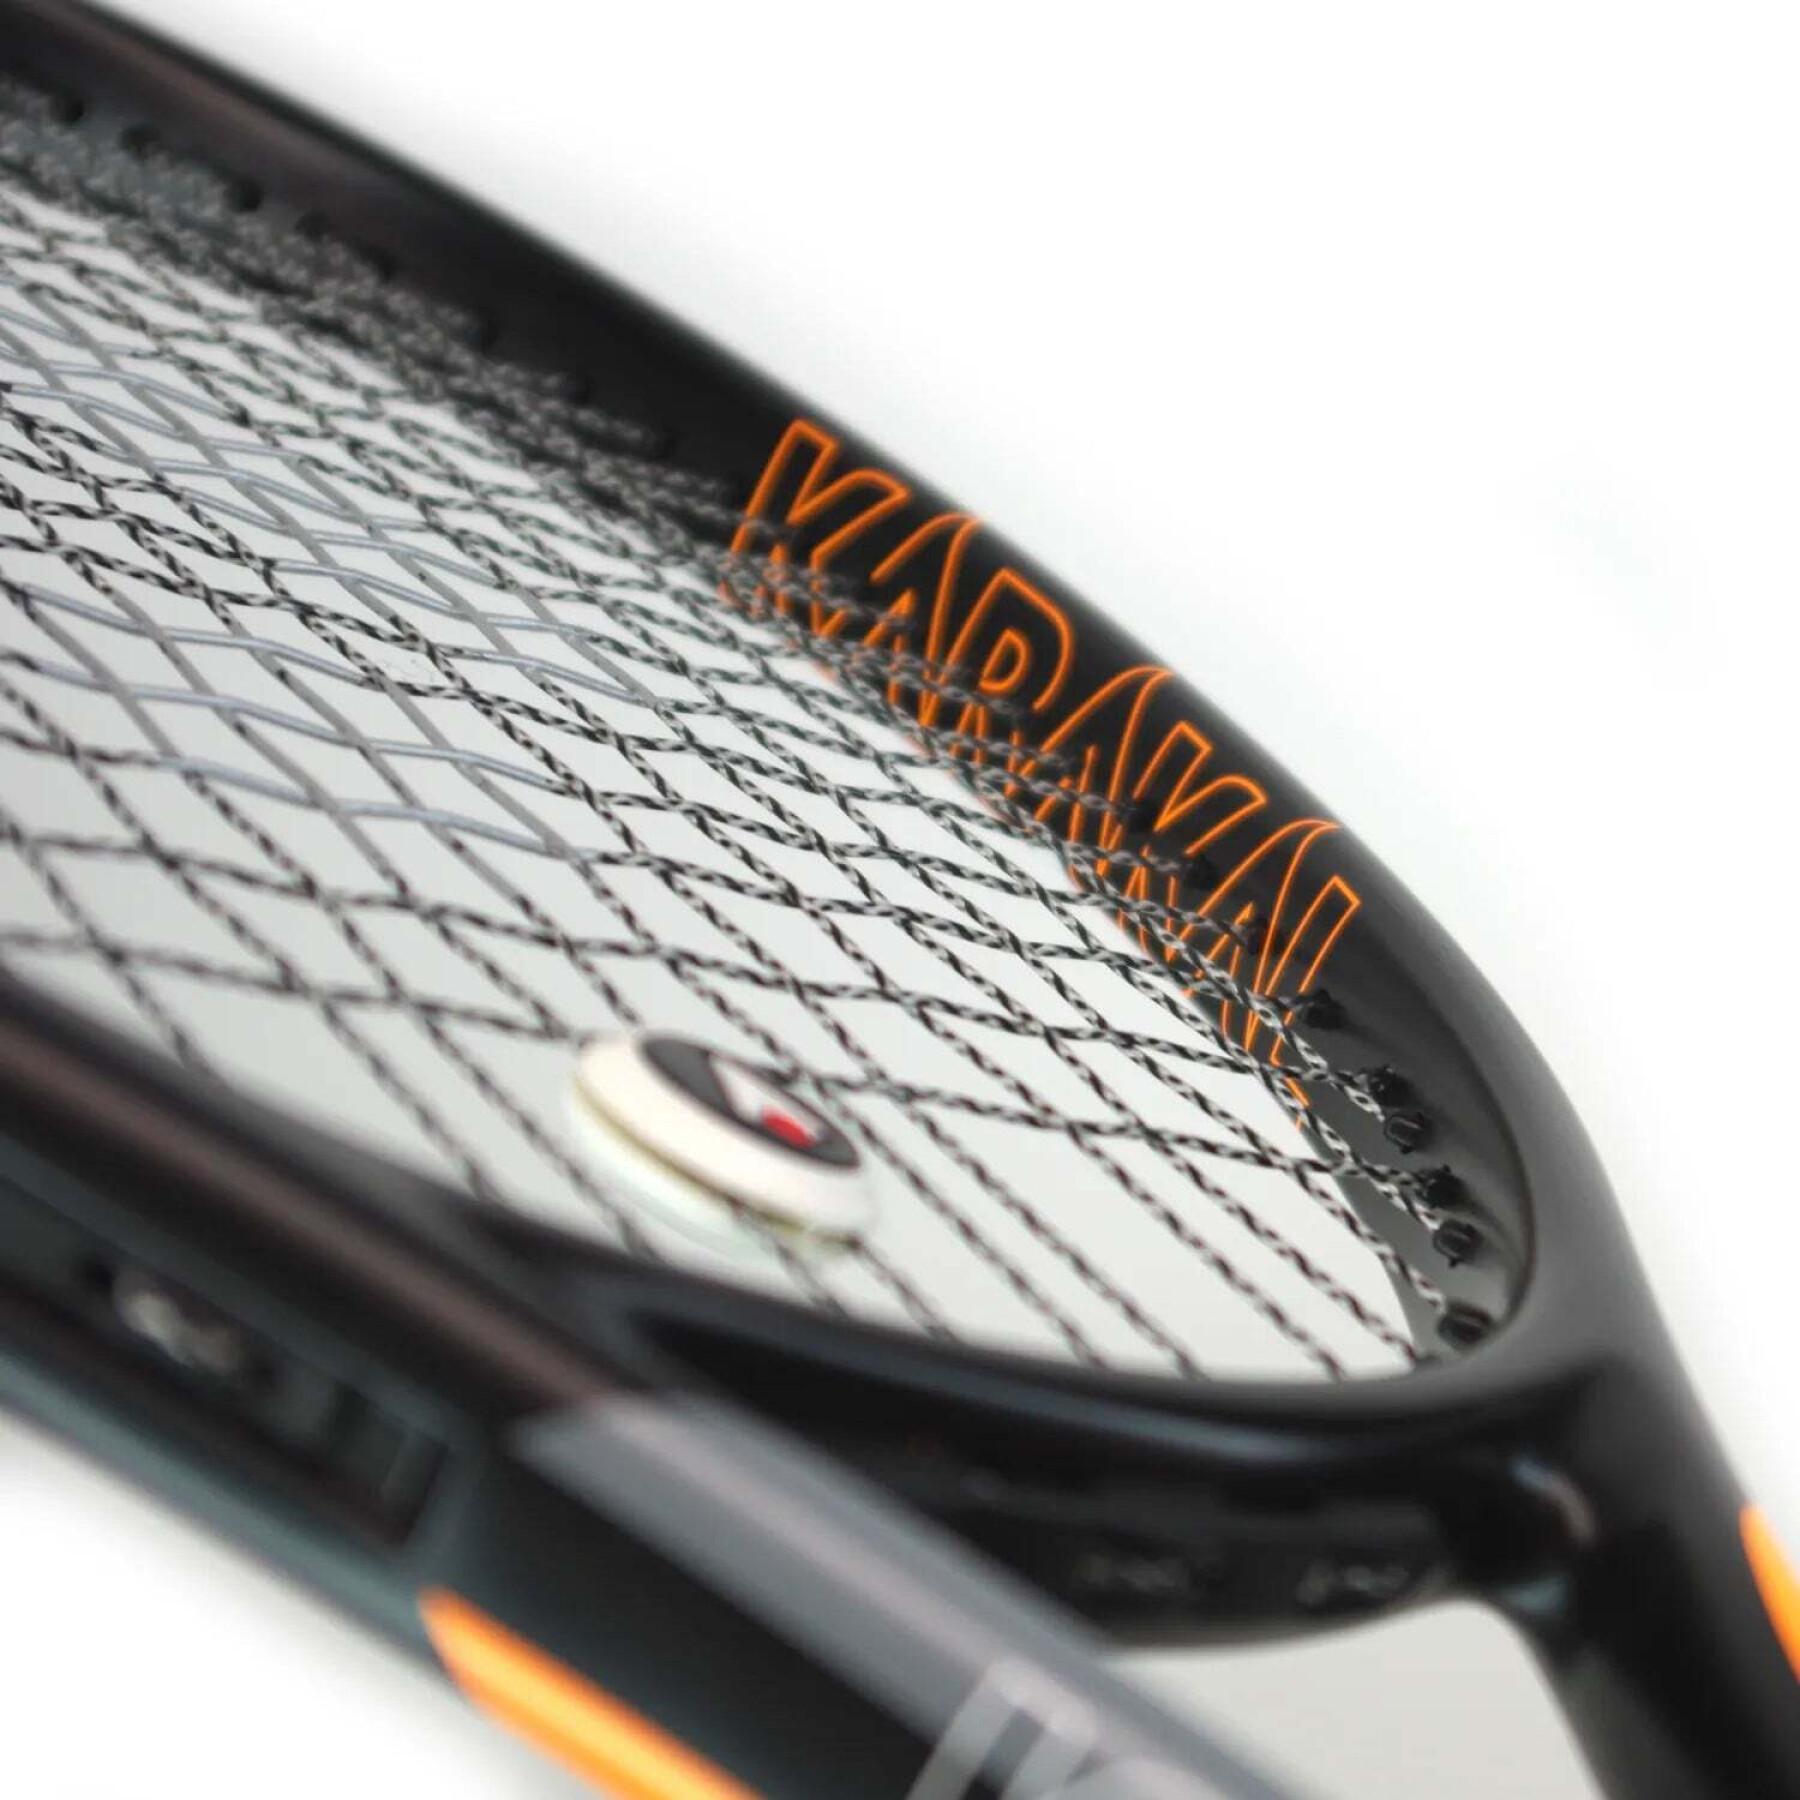 Racchetta da tennis Karakal Graphite Pro 280